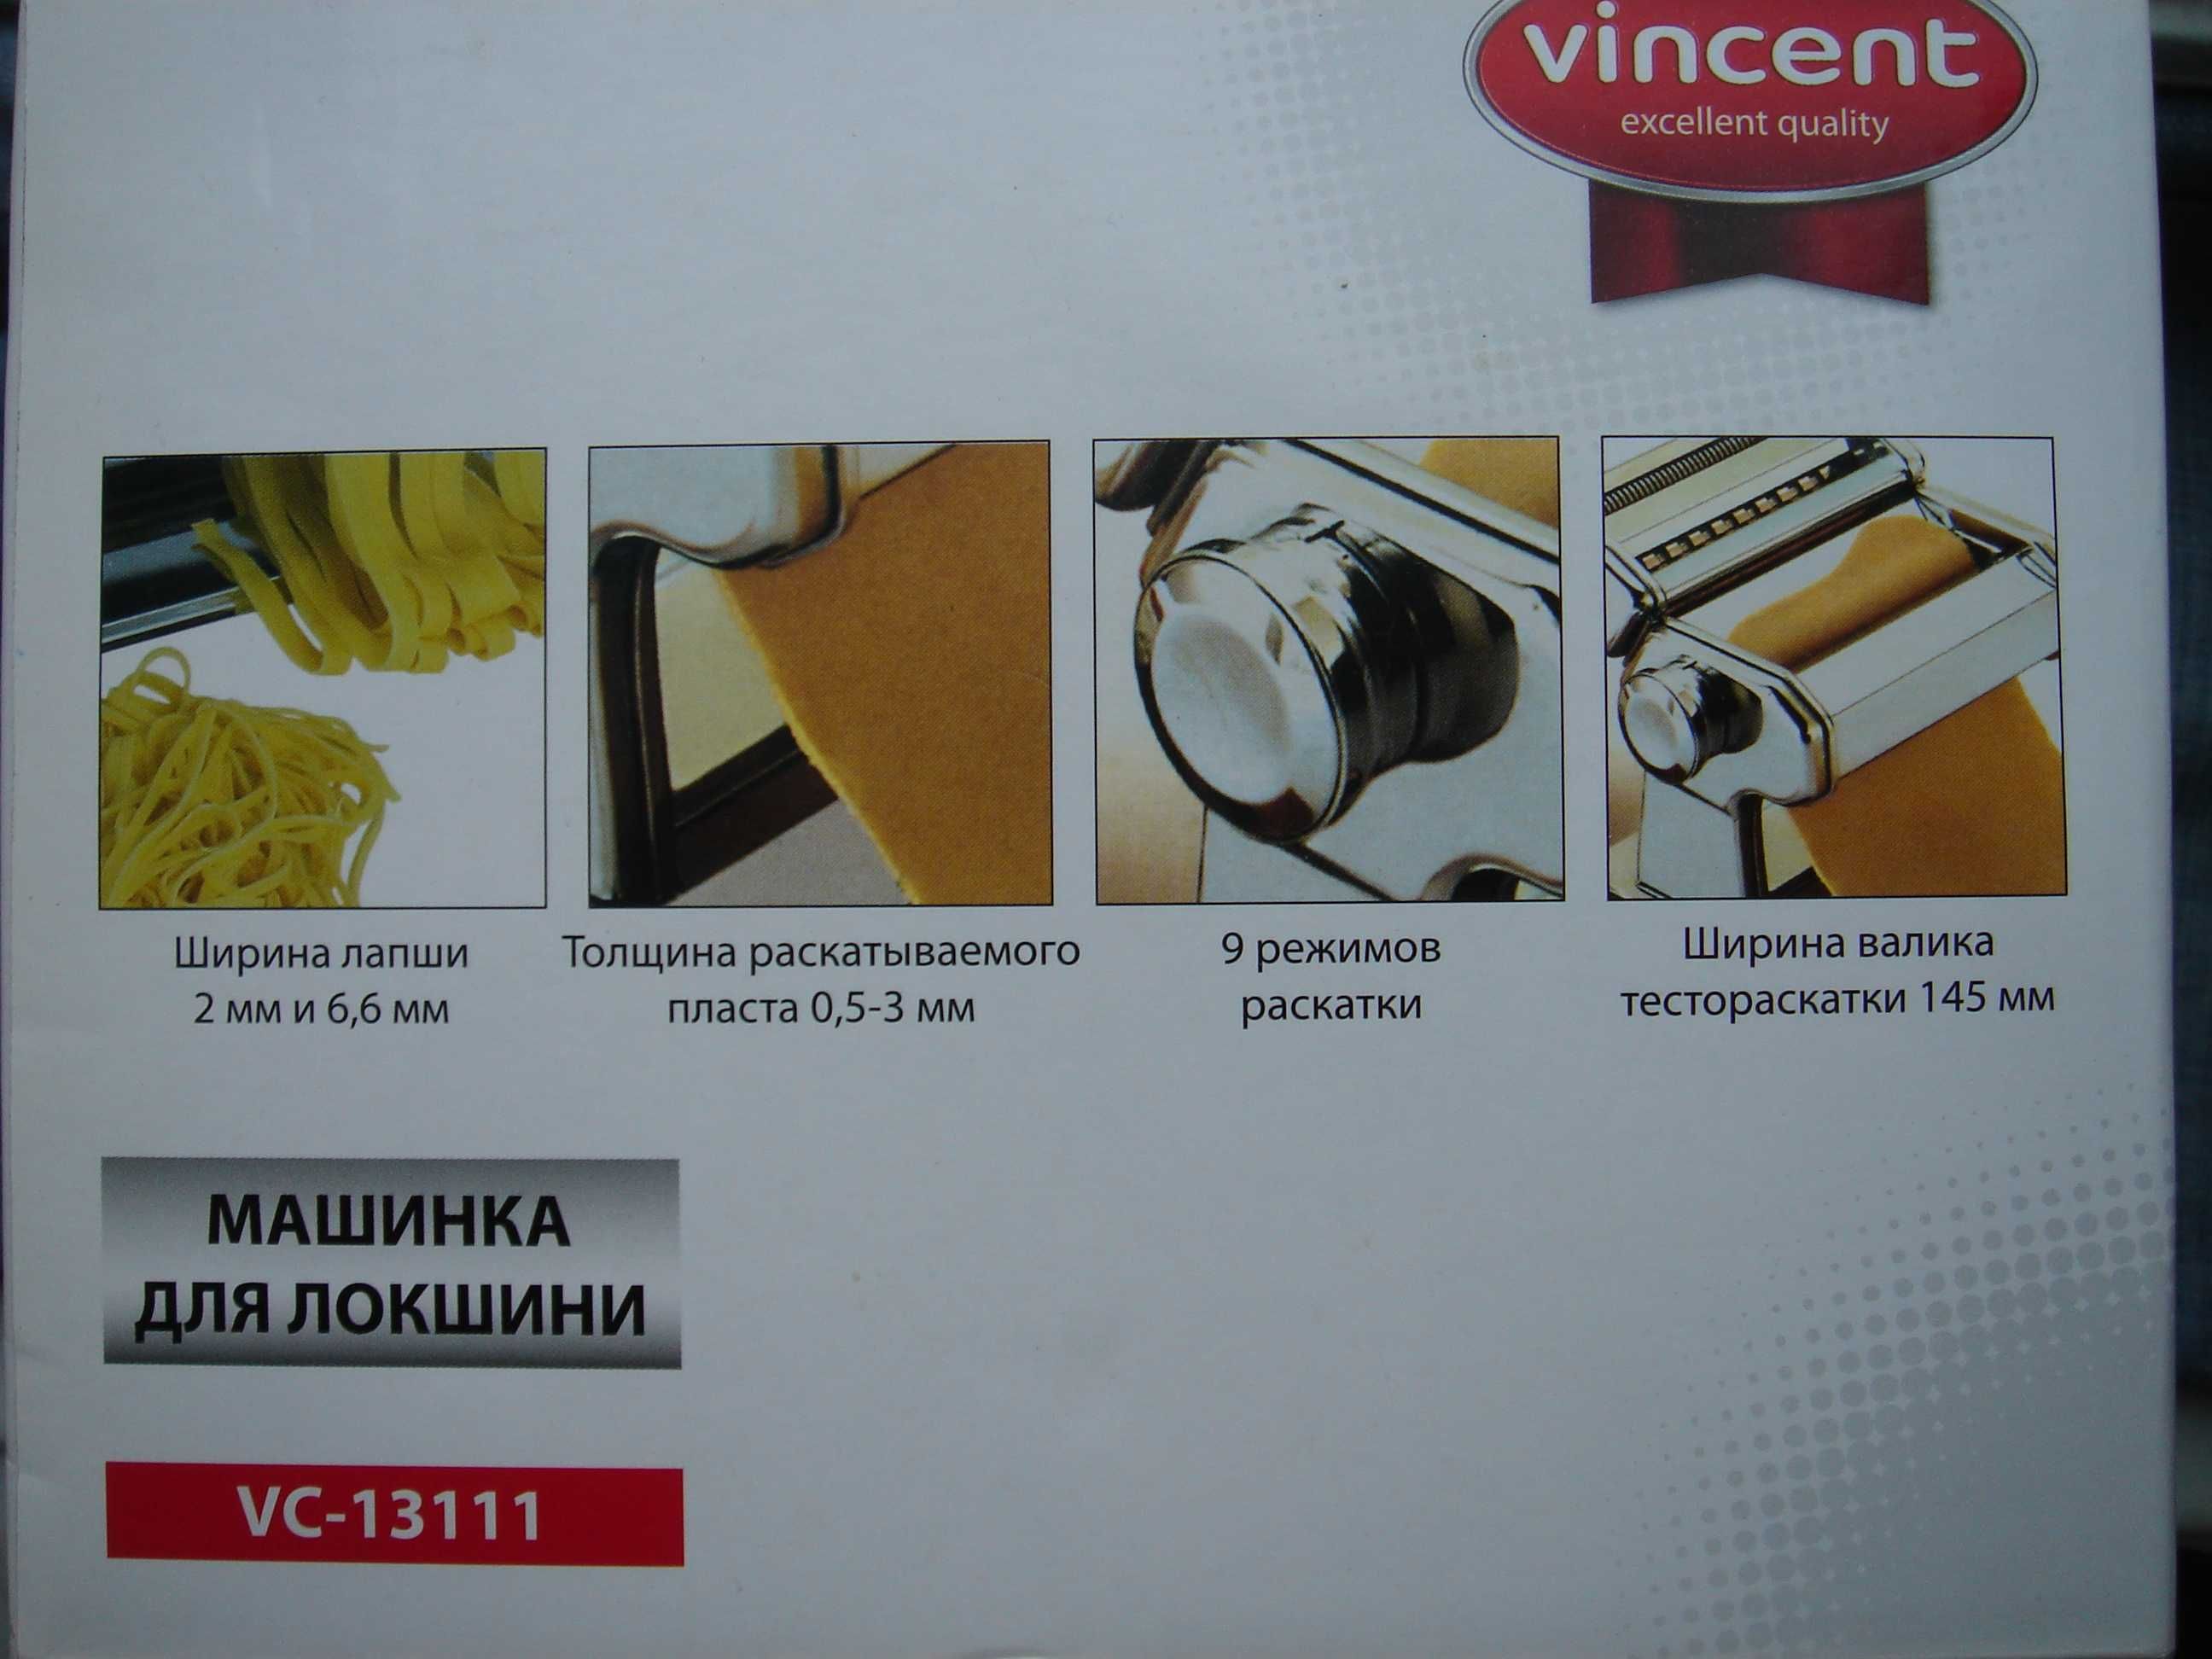 Настільна локшінорізка Vincent VC-13111 , з ручним приводом